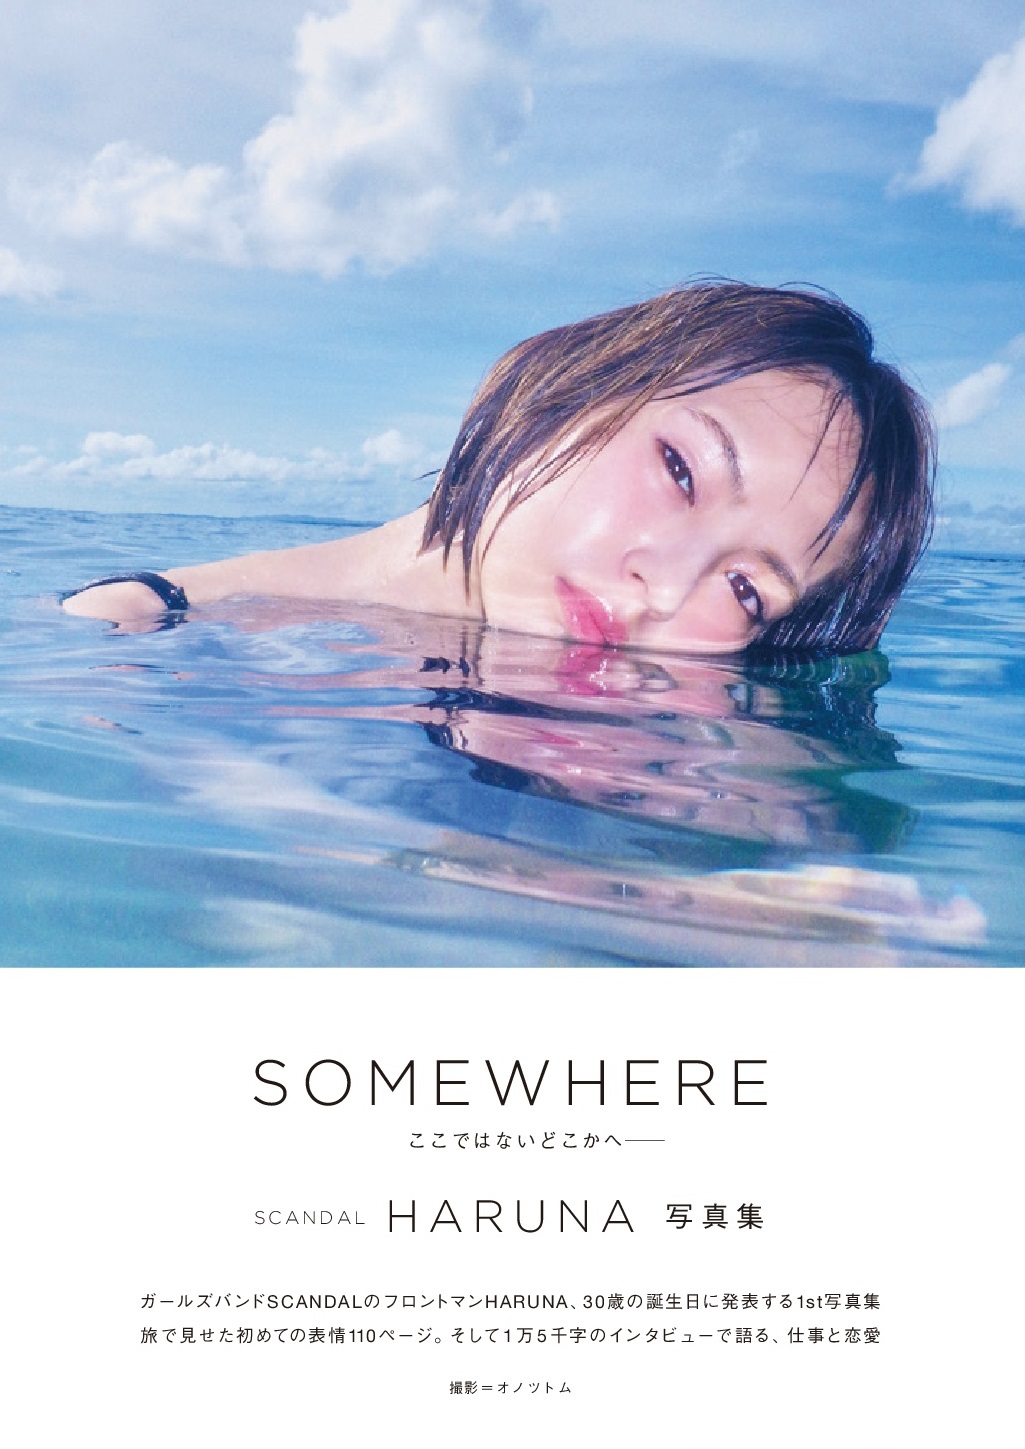 【HARUNA's 1st Photo Book『SOMEWHERE』】Interview With HARUNA Scandal-haruna-somewhere